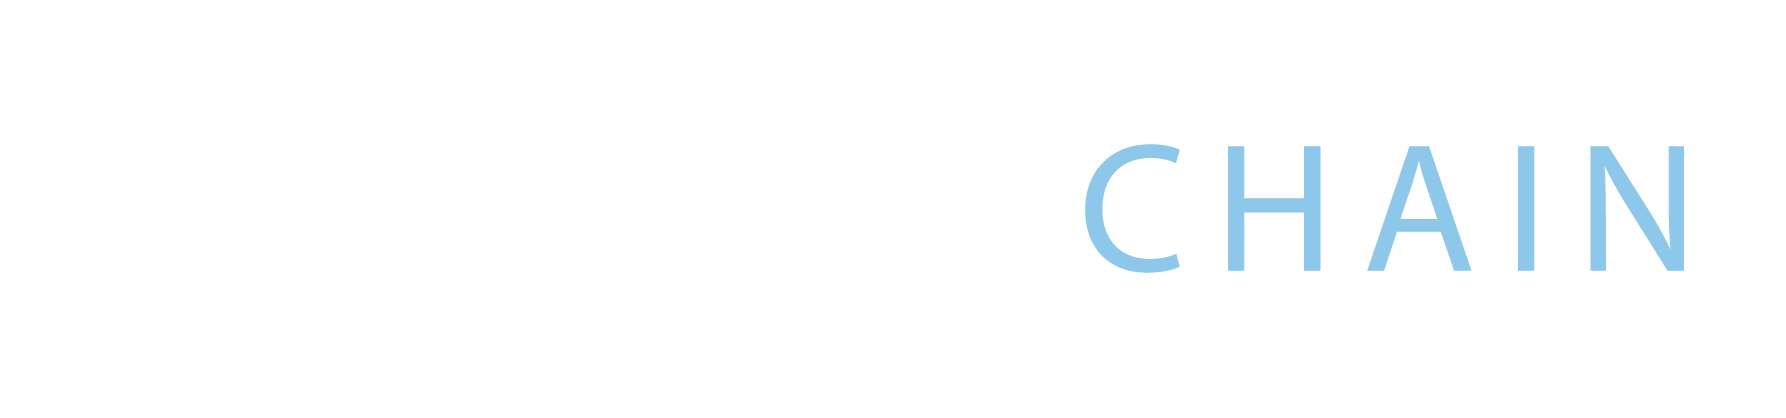 Everchain_Logo_Update_Horizontal_DarkBKG_C1F-3